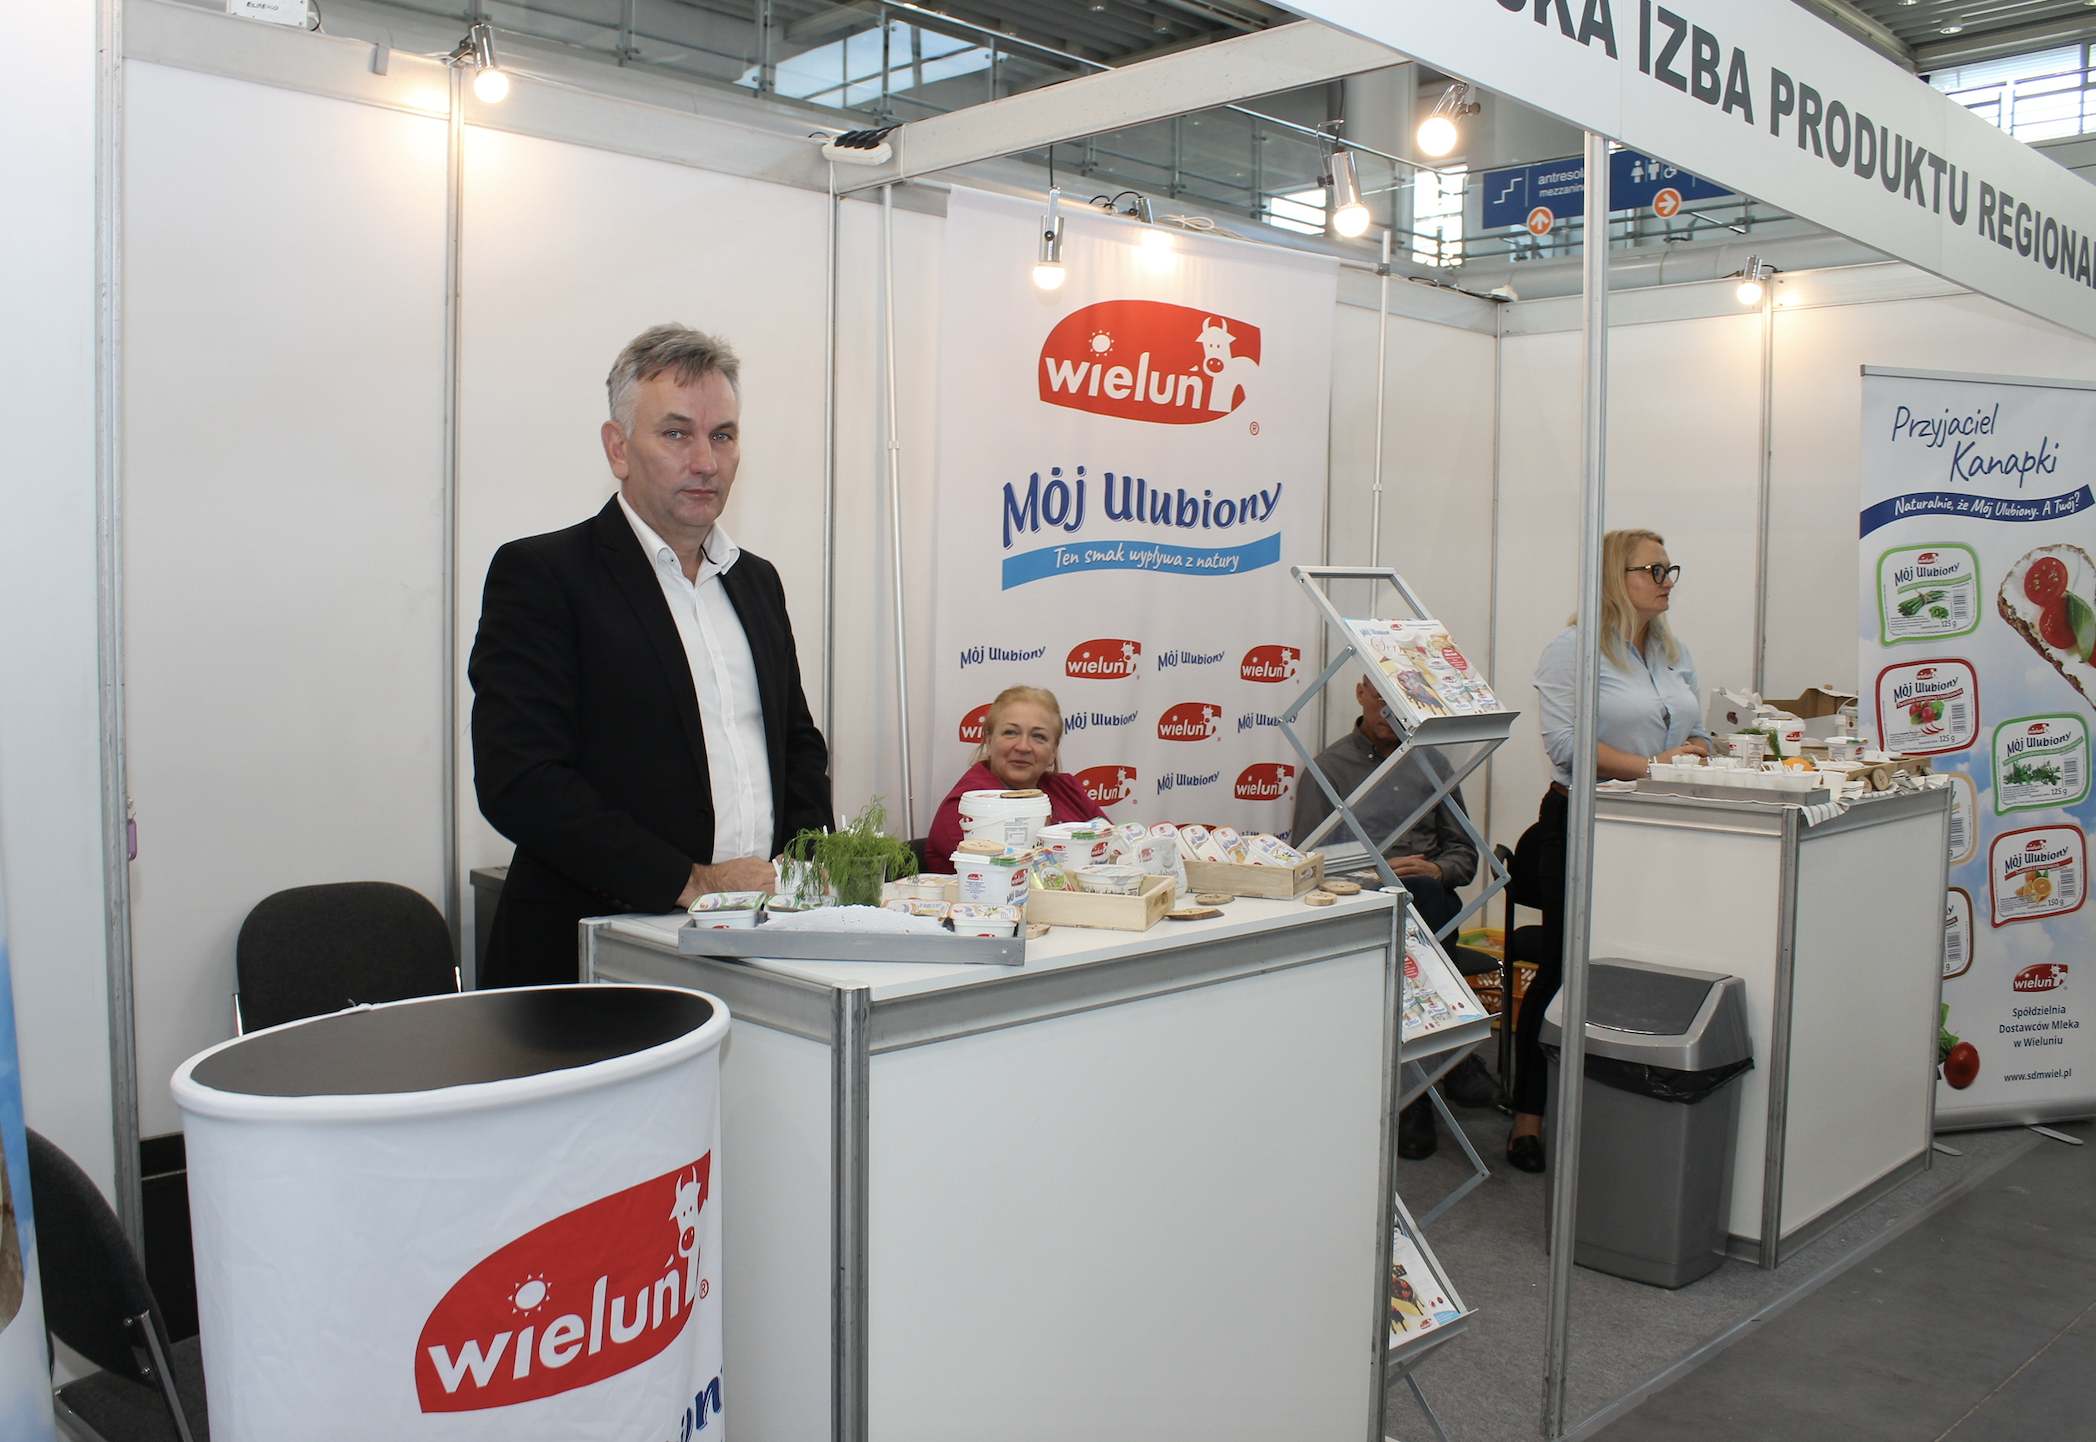 SDM Wieluń swoje stoisko ustawiła na Smakach Regionów, jak co roku towarzyszących Polagrze Food. Na zdjęciu stoi Marek Kapica, prezes spółdzielni, w głębi siedzi Iwona Sandak, wiceprezes